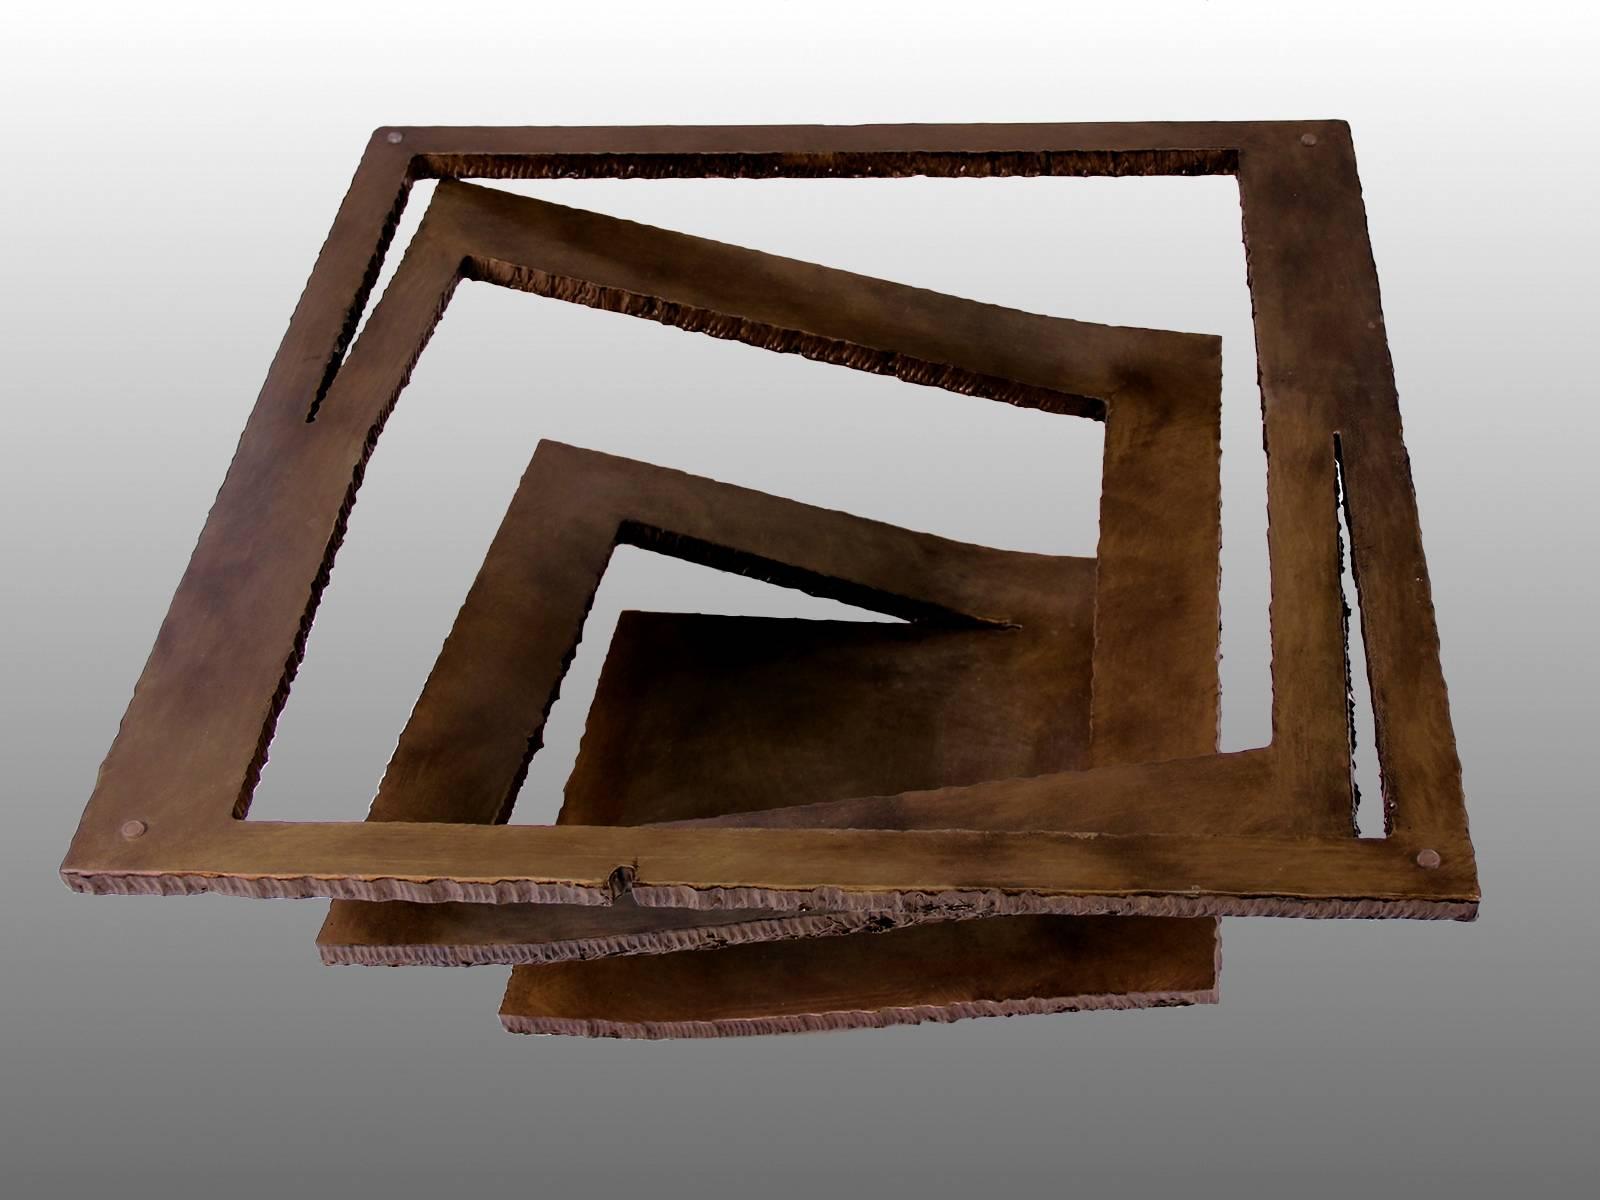 Paire de tables basses ou d'appoint en acier massif, découpé et étiré, patiné couleur bronze, France, 1970.
Les dimensions sont données sans le plateau en verre.

Il est possible de n'en vendre qu'un seul.